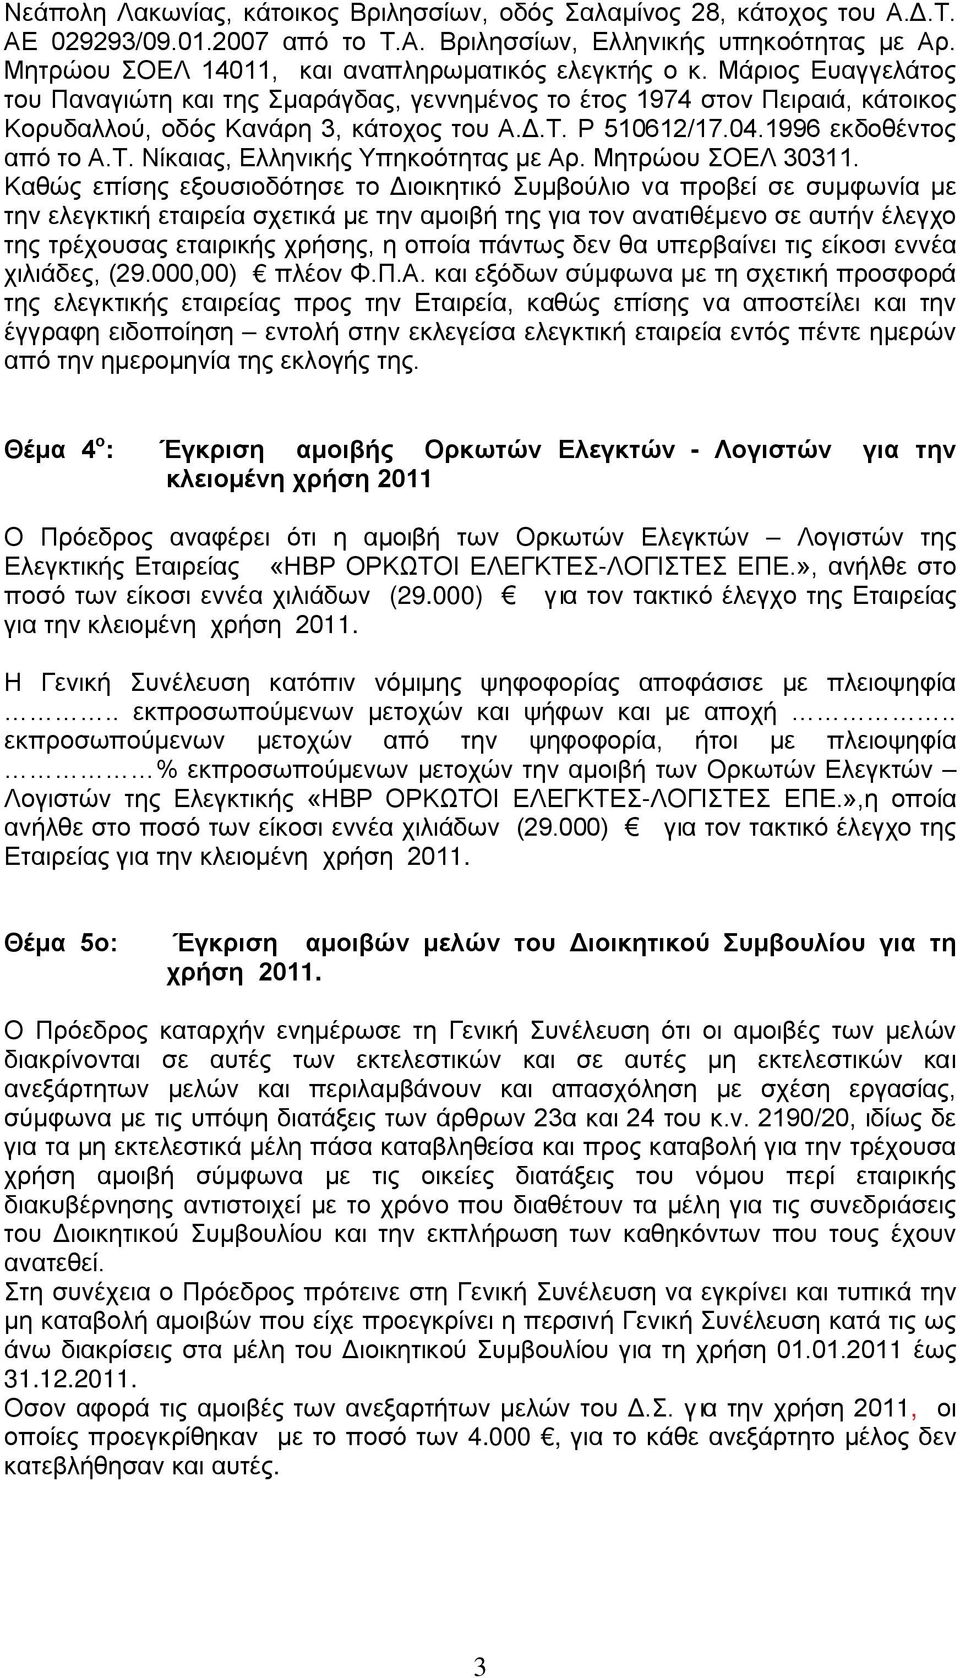 Ρ 510612/17.04.1996 εκδοθέντος από το Α.Τ. Νίκαιας, Ελληνικής Υπηκοότητας με Αρ. Μητρώου ΣΟΕΛ 30311.